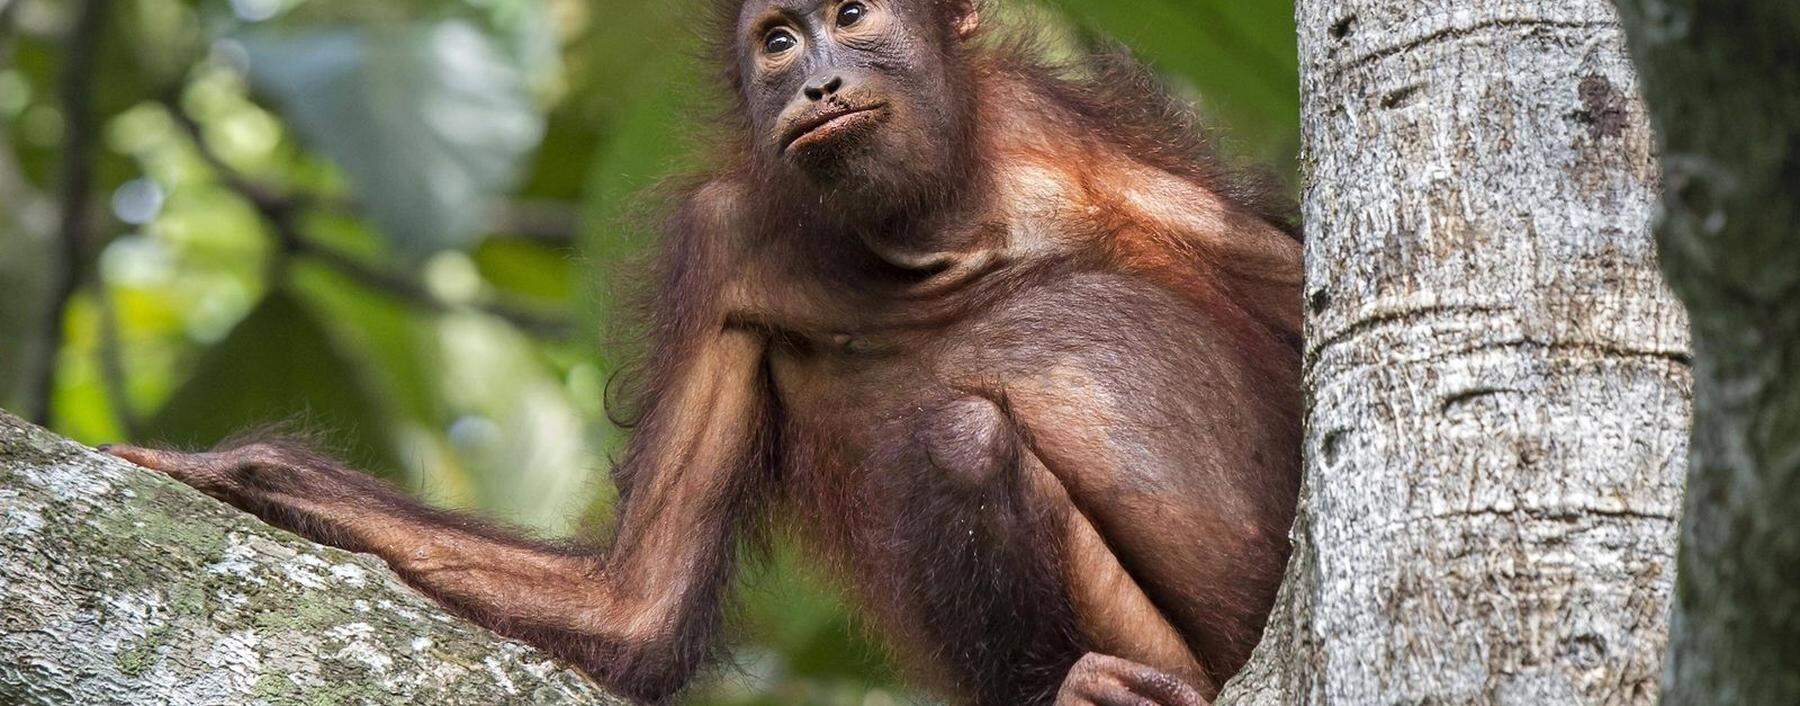 Bekommen Primaten (im Bild ein Orang Utan) im Kanton Basel-Stadt Grundrechte?